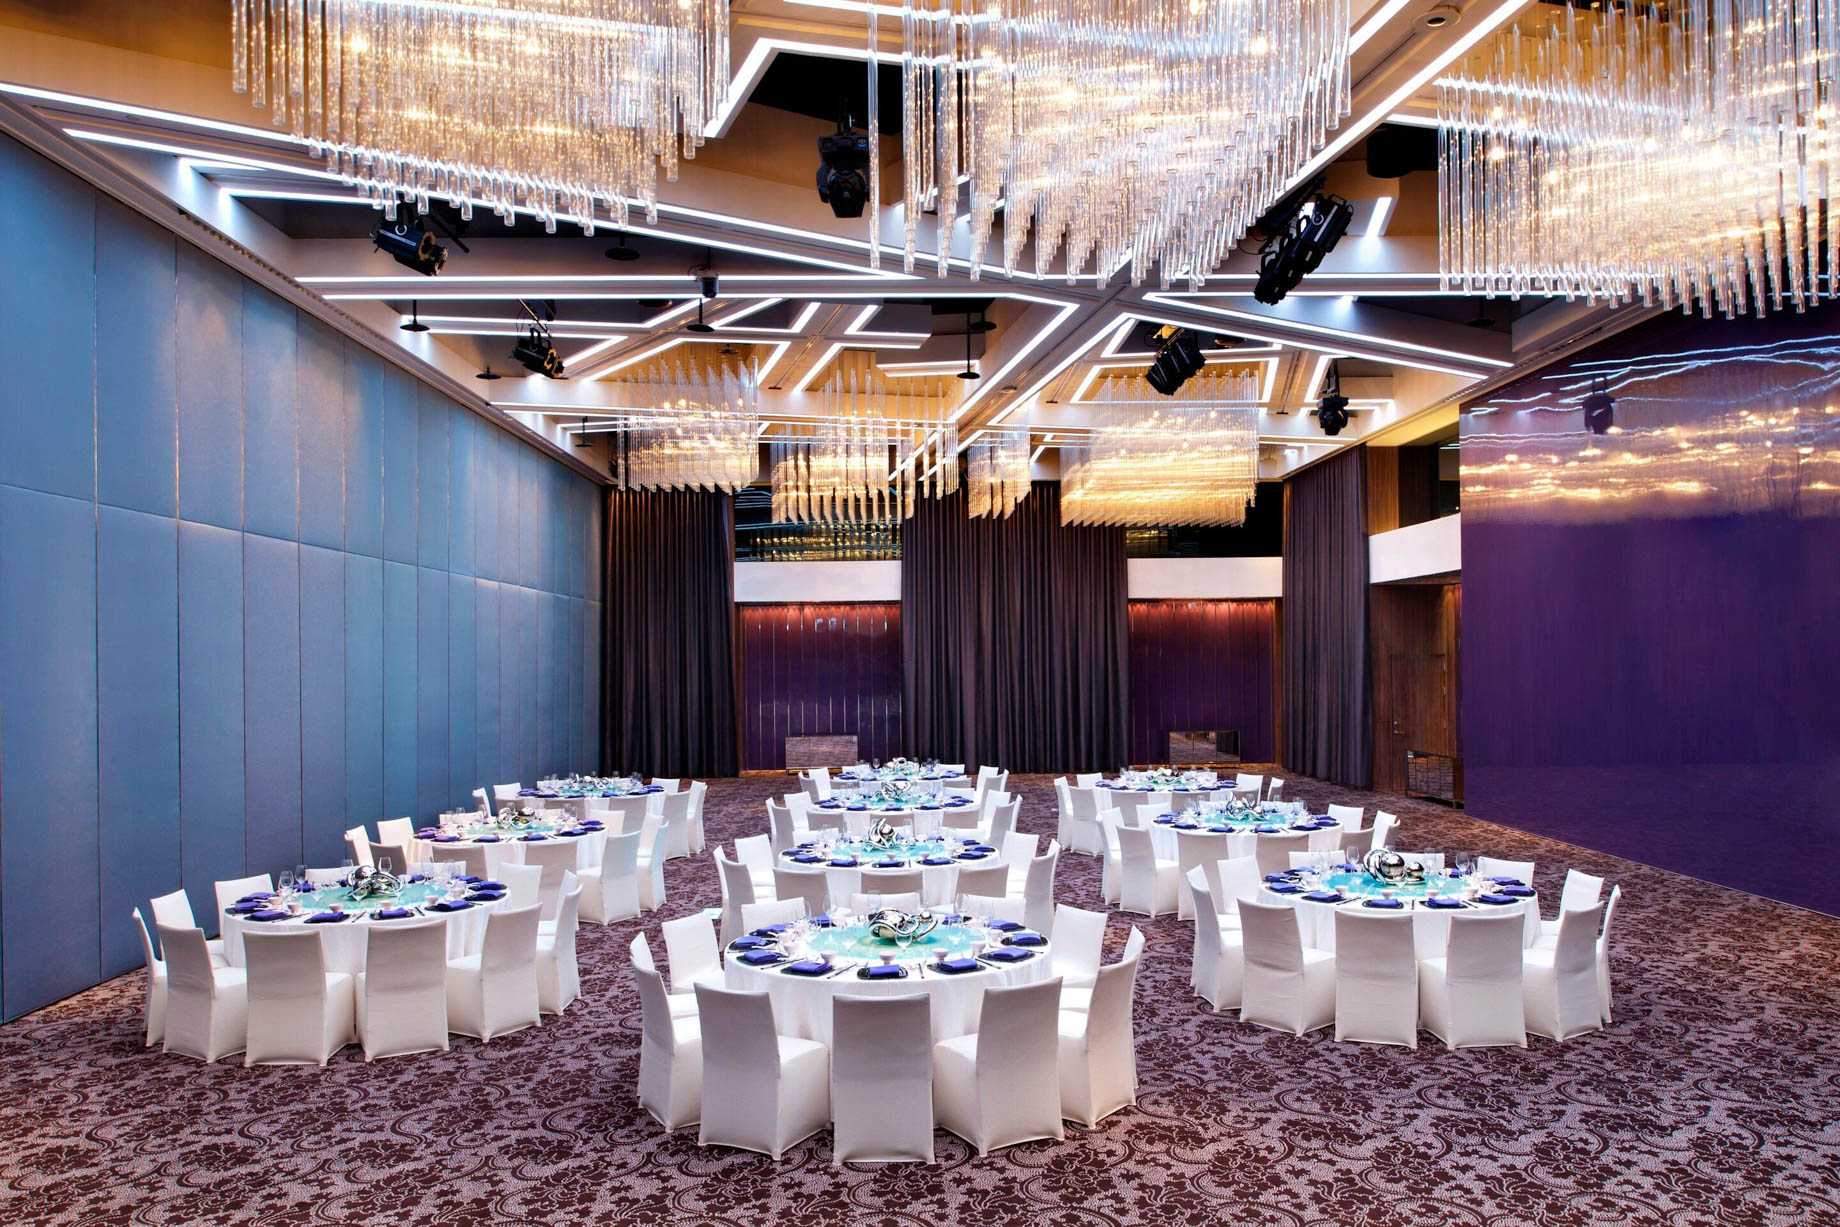 W Taipei Hotel – Taipei, Taiwan – Mega Room Dining Setup